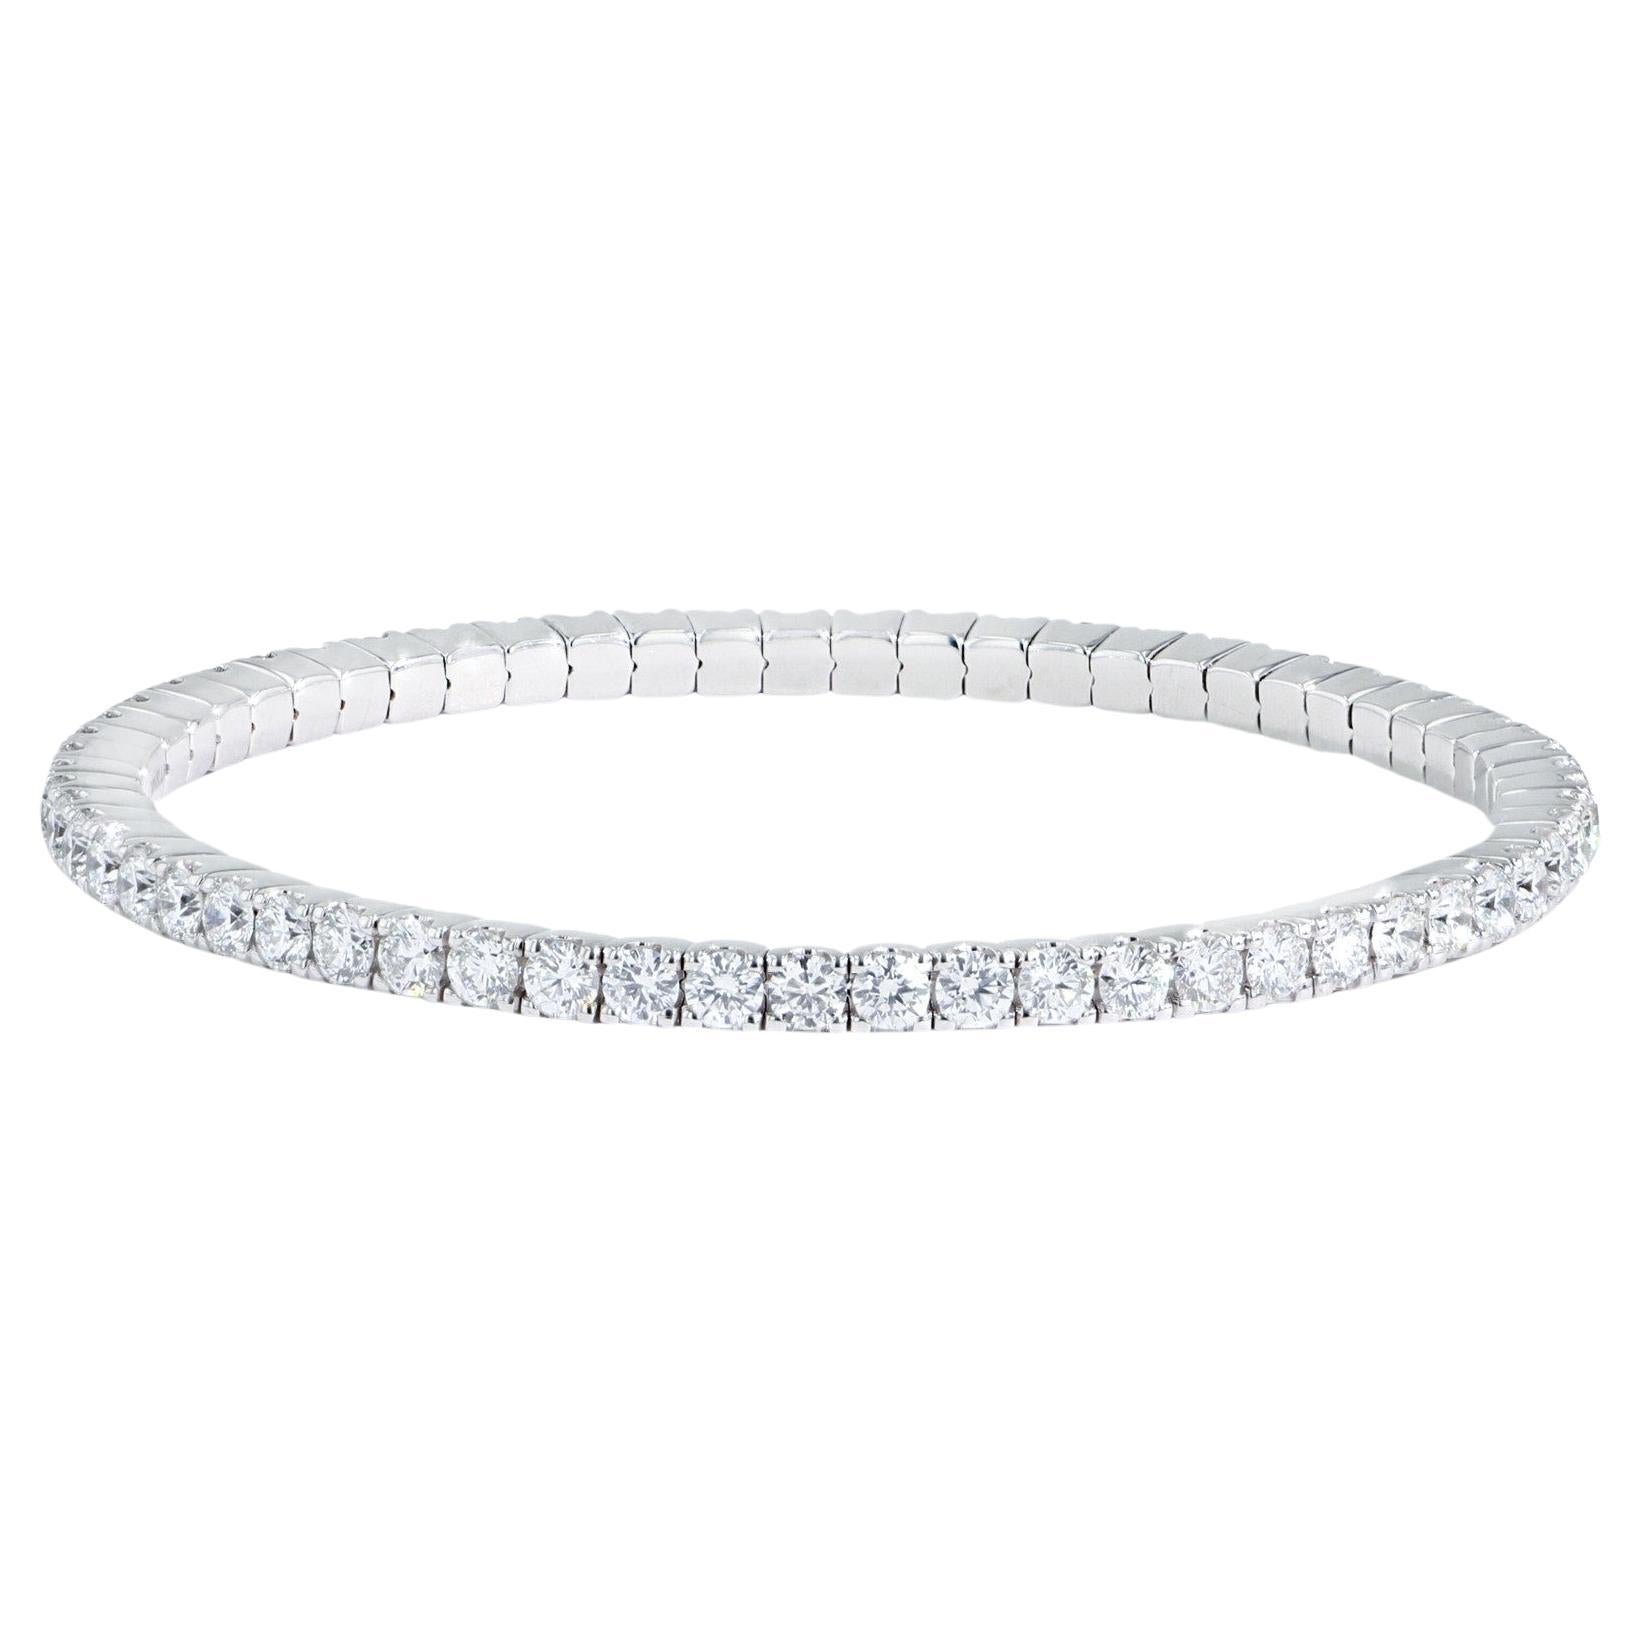 Dieses flexible Armband mit Diamanten ist ikonisch und stilvoll und setzt ein Zeichen. Aus 18 Karat Weiß-, Gelb- oder Roségold gefertigt und mit runden Diamanten im Brillantschliff versehen, passt er mühelos zu jedem Outfit. Ob allein oder